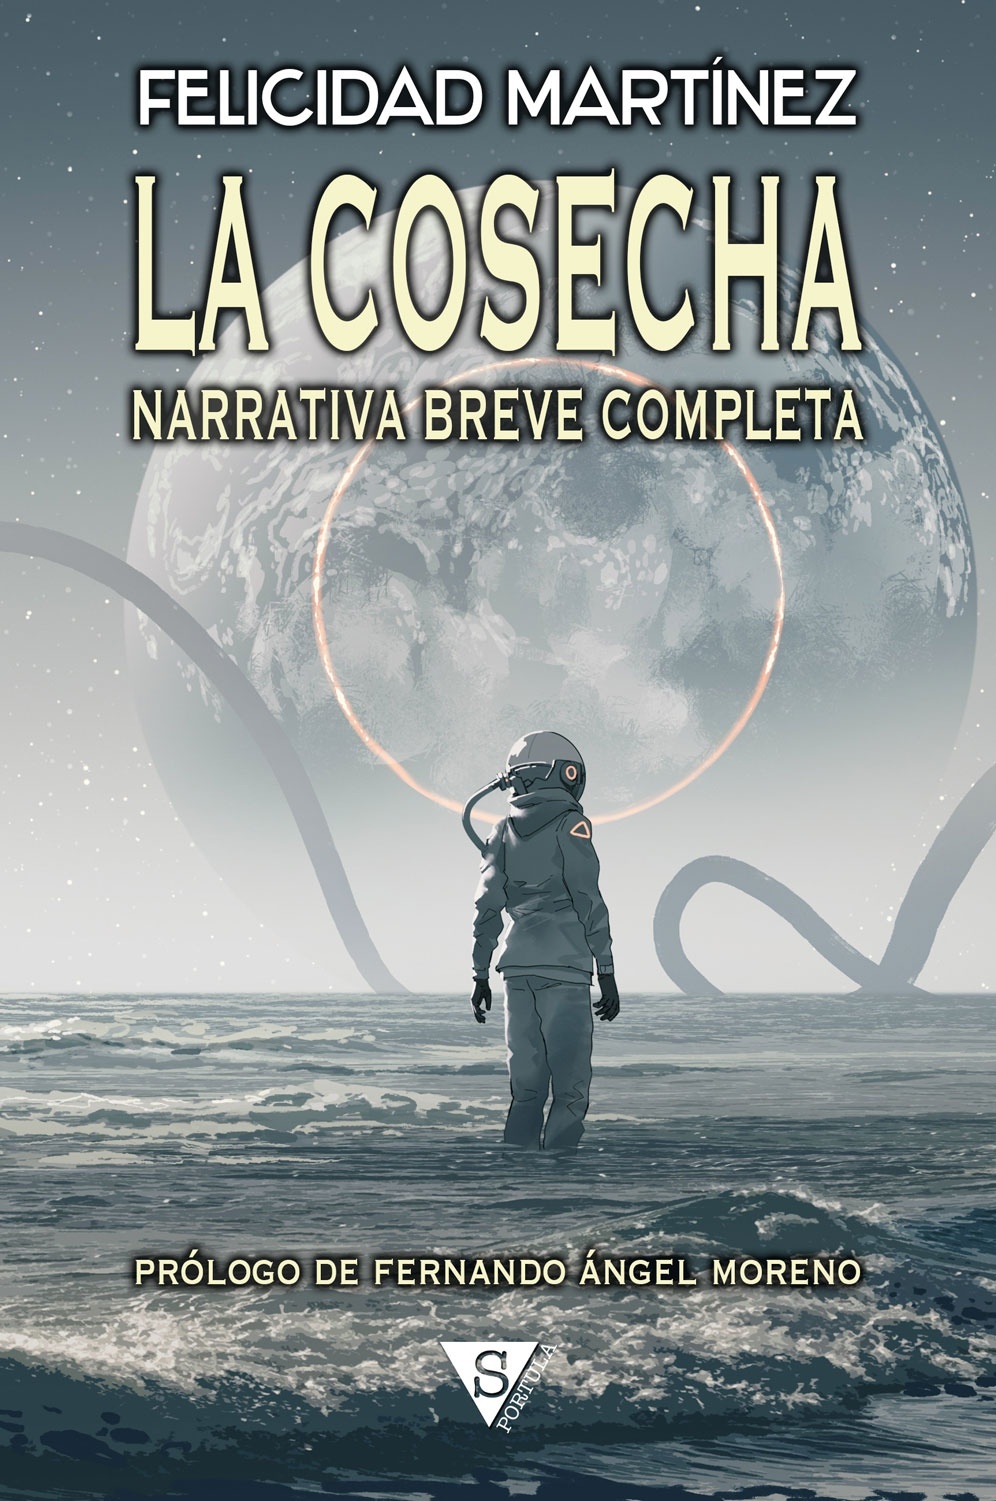 Cosecha, La (edición en tapa dura) "Narrativa breve completa". 